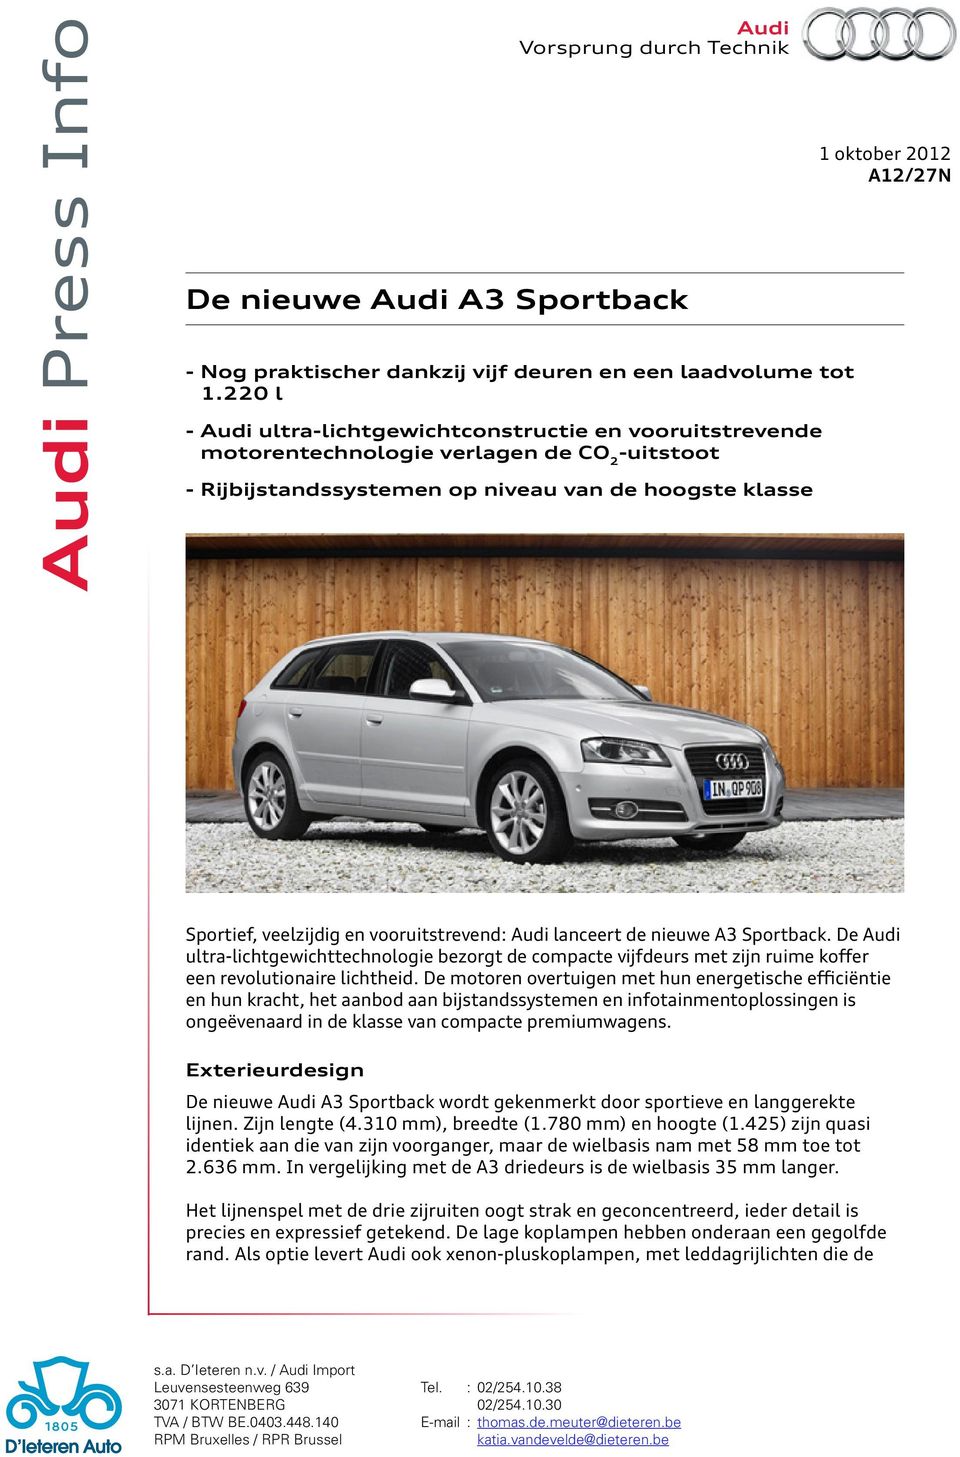 veelzijdig en vooruitstrevend: Audi lanceert de nieuwe A3 Sportback. De Audi ultra-lichtgewichttechnologie bezorgt de compacte vijfdeurs met zijn ruime koffer een revolutionaire lichtheid.